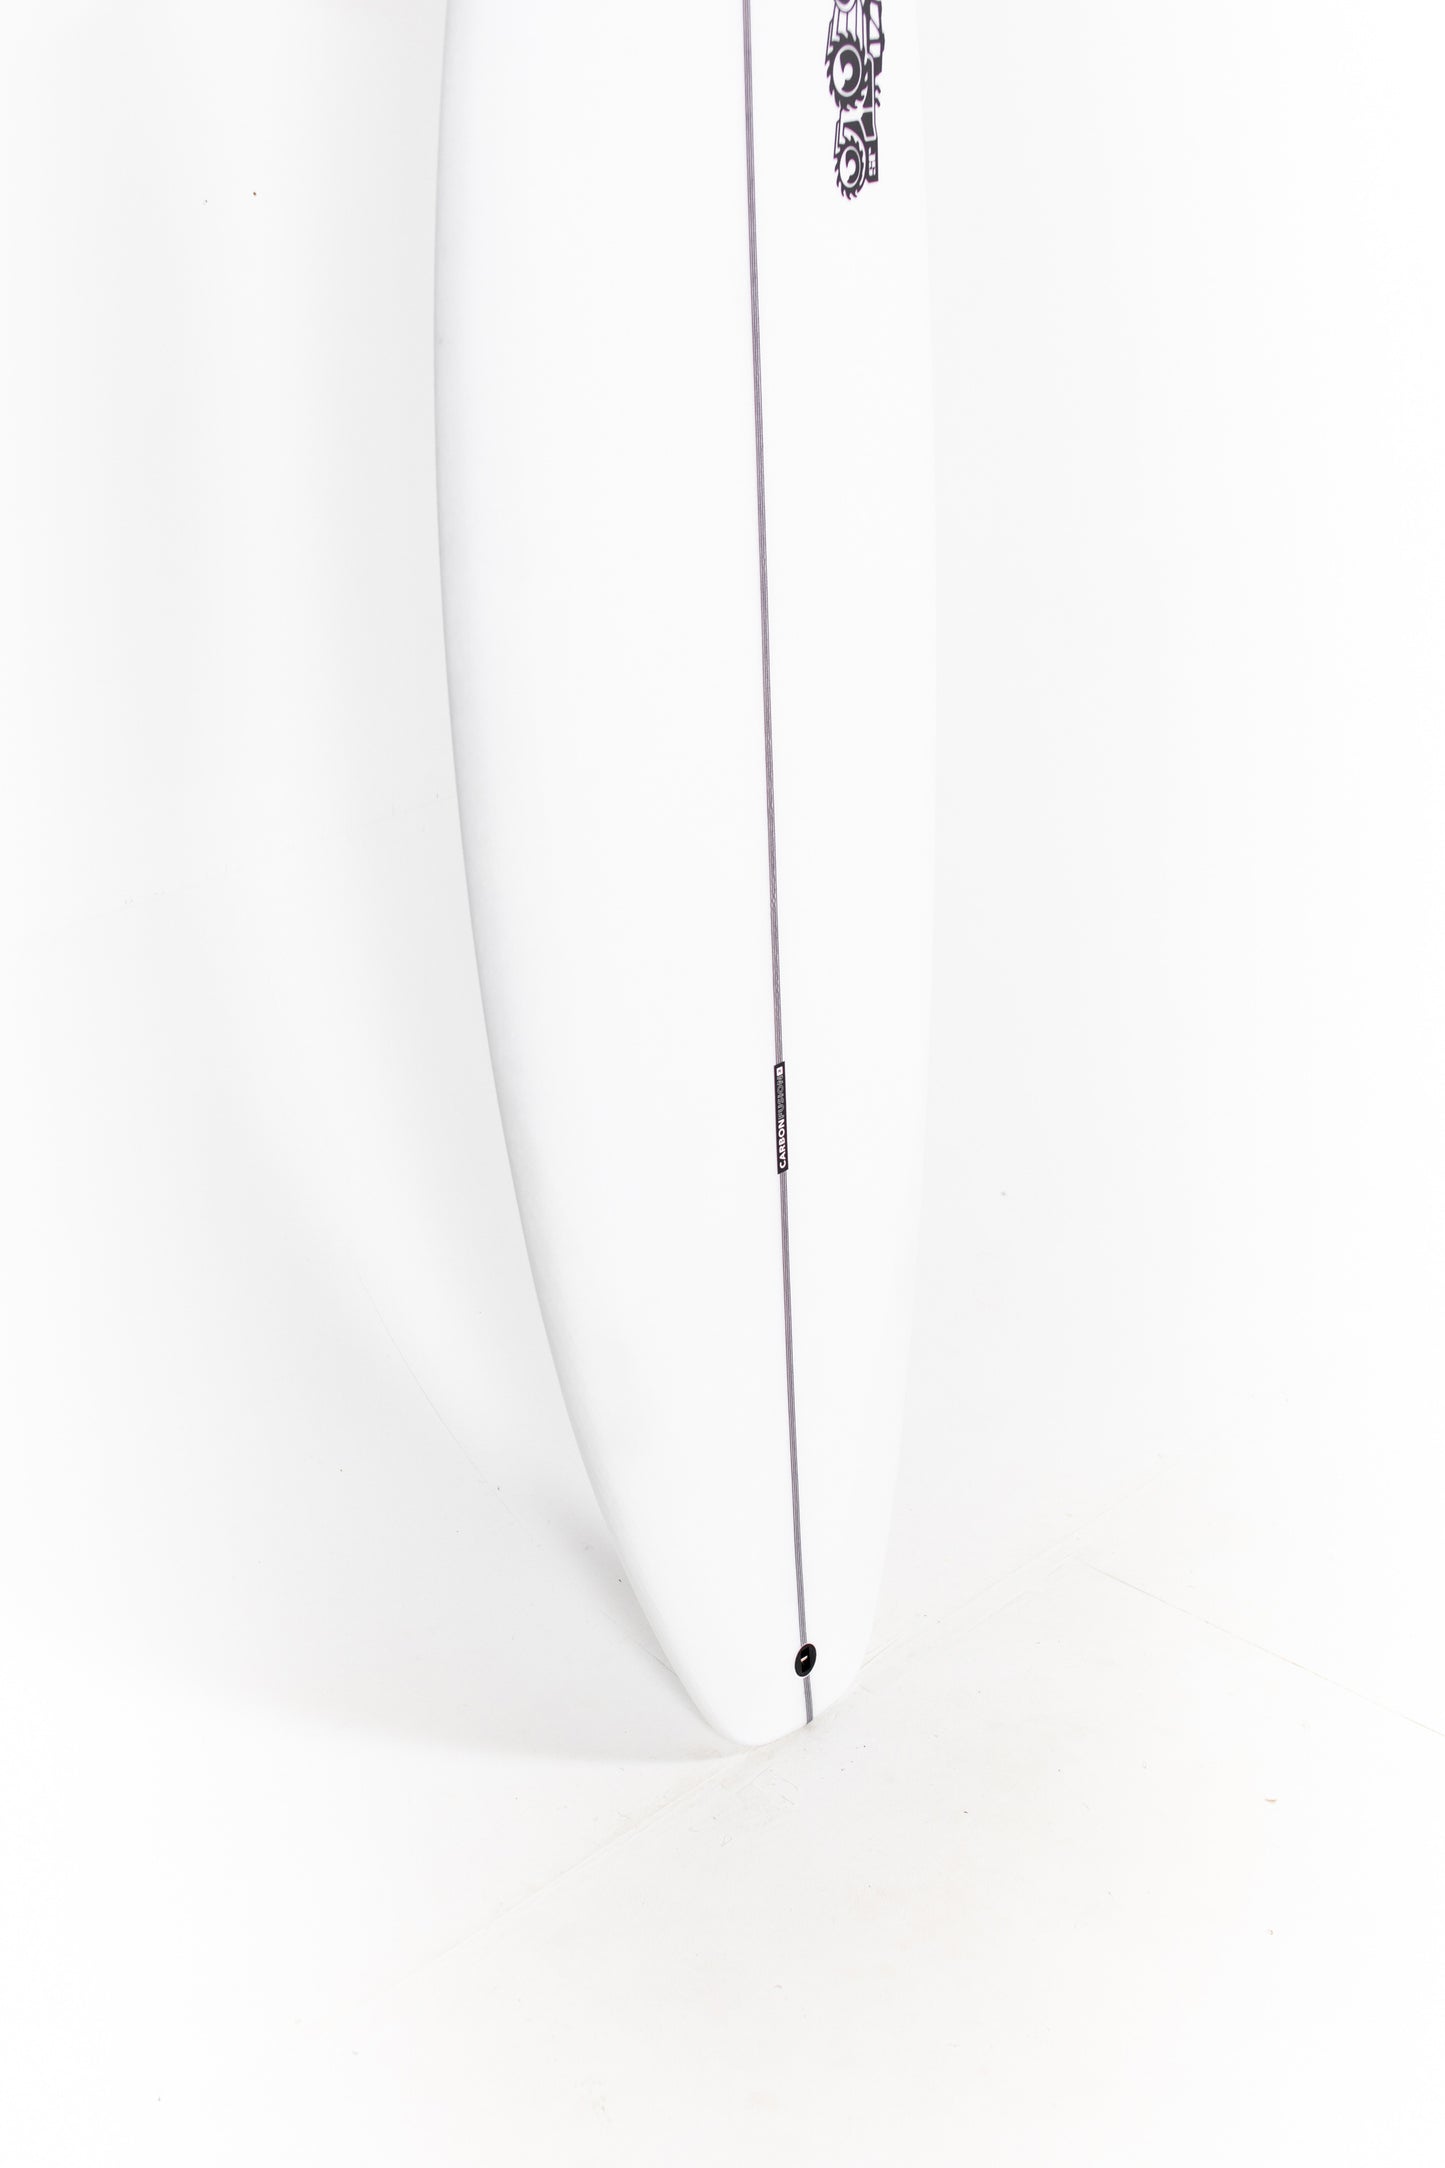 
                  
                    Pukas Surf Shop - JS Surfboards - MONSTA 2020 - 6'0" x 18 3/4 x 2 5/16 x 27.5L. - MONSTA2020560
                  
                